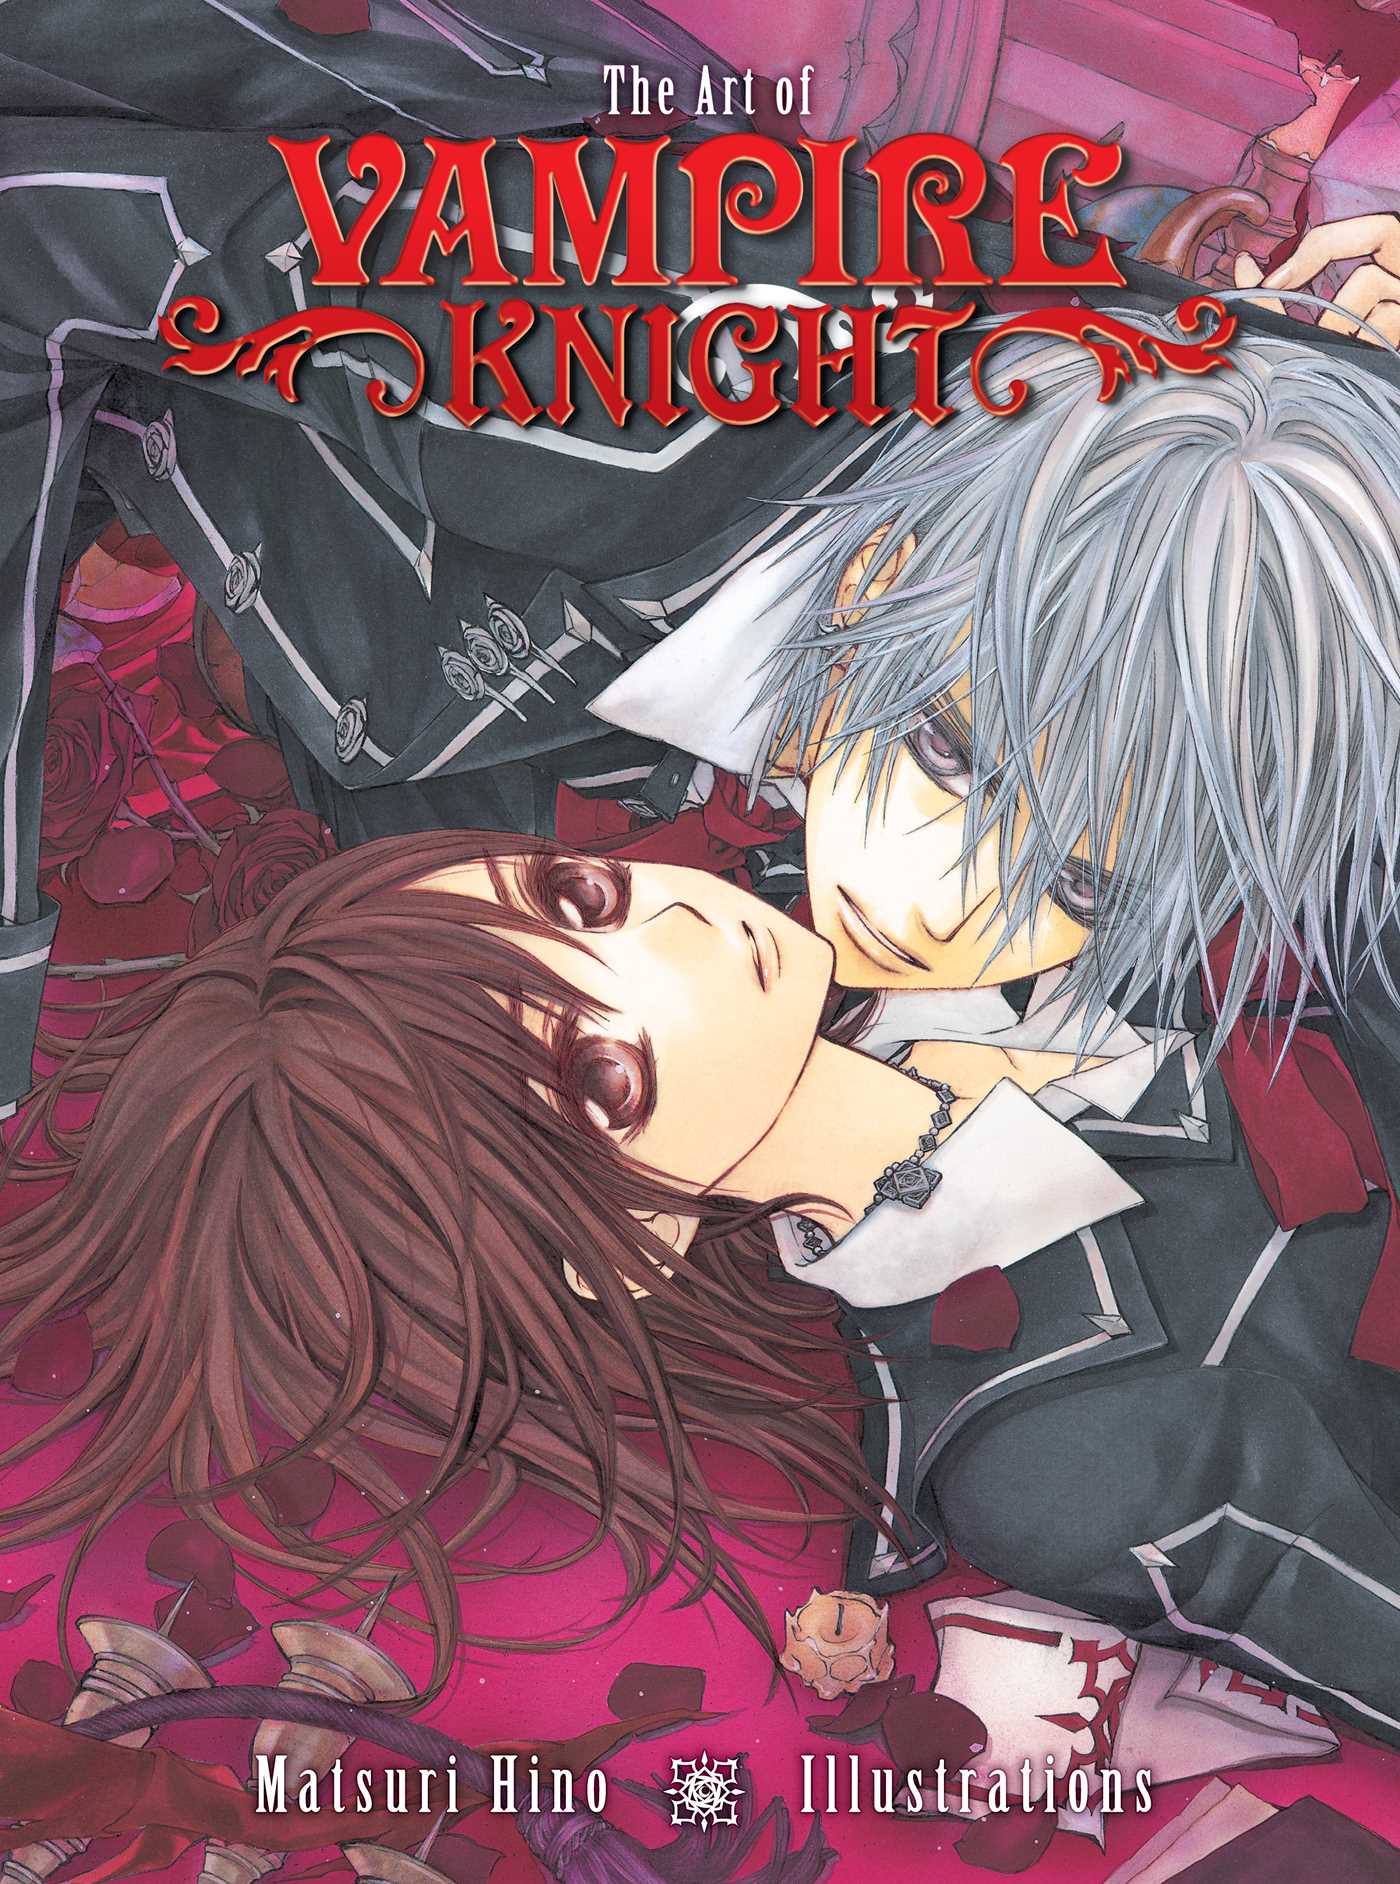 Vampire Knight Vol 1 Vampire Knight 1 by Matsuri Hino  Goodreads